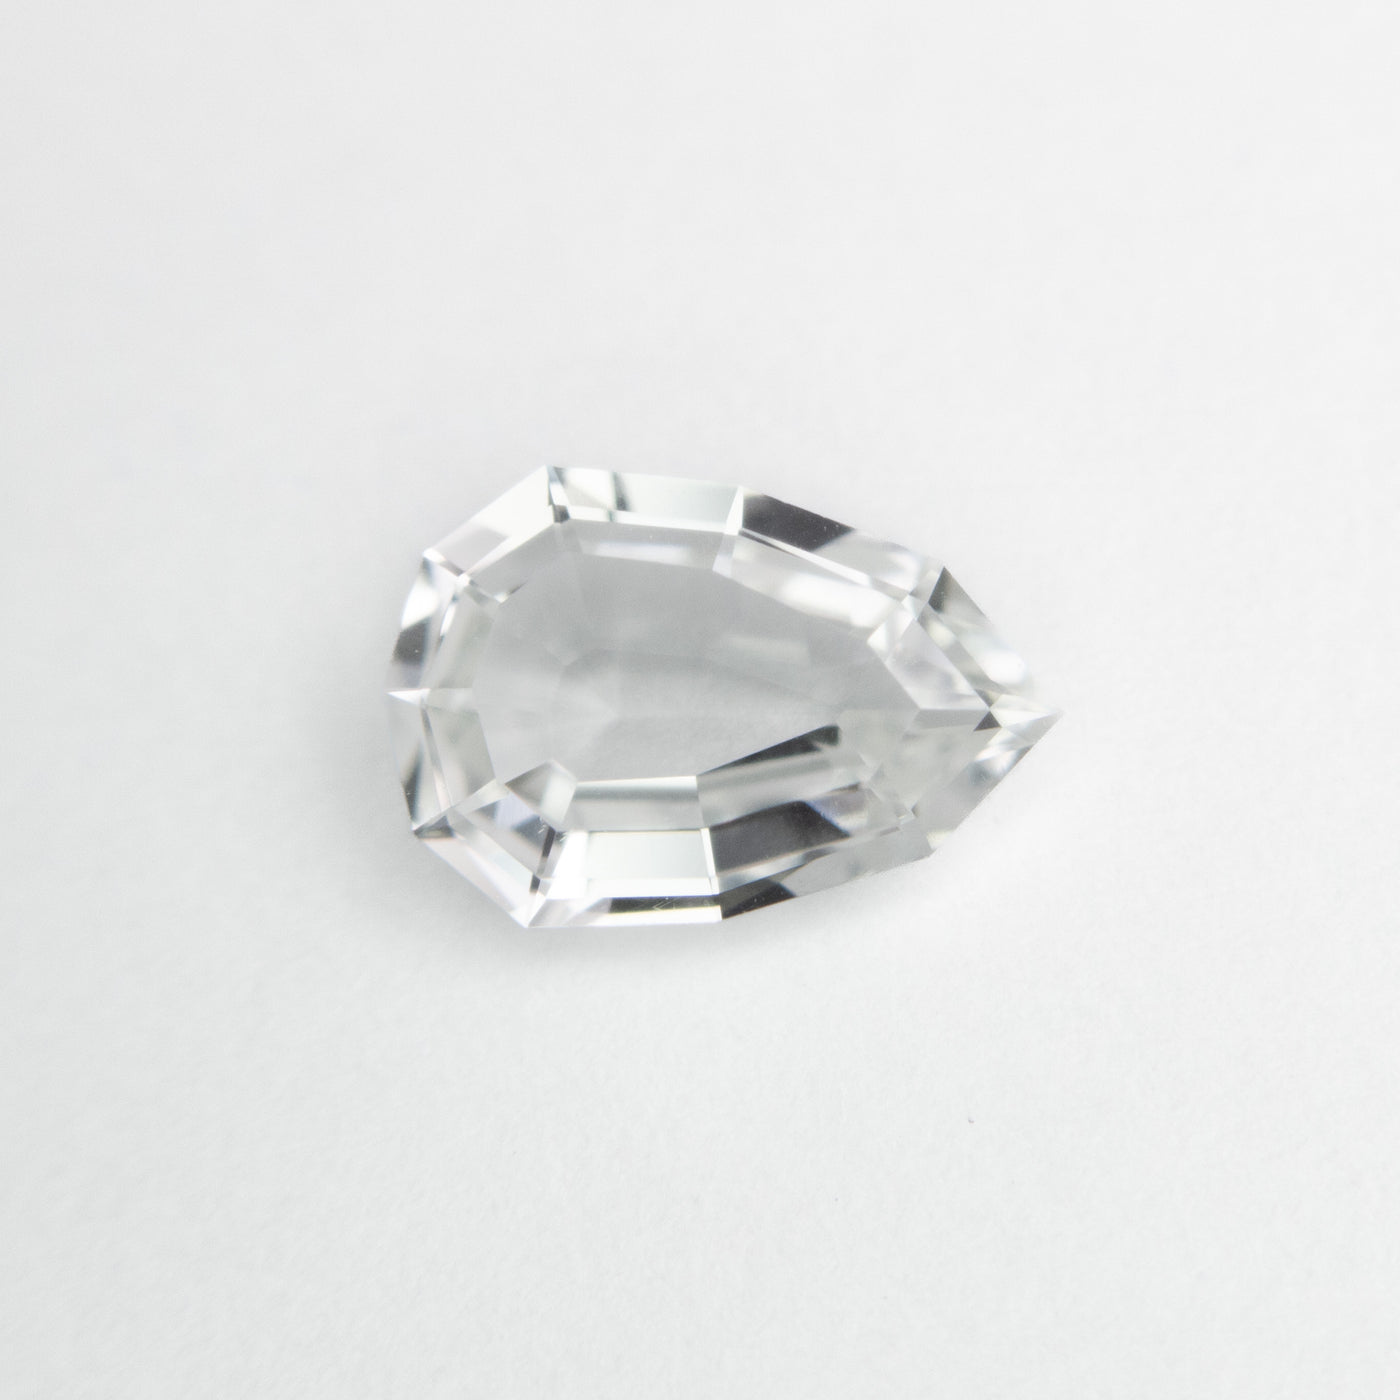 1.19ct White Geometric Pear Cut Sapphire